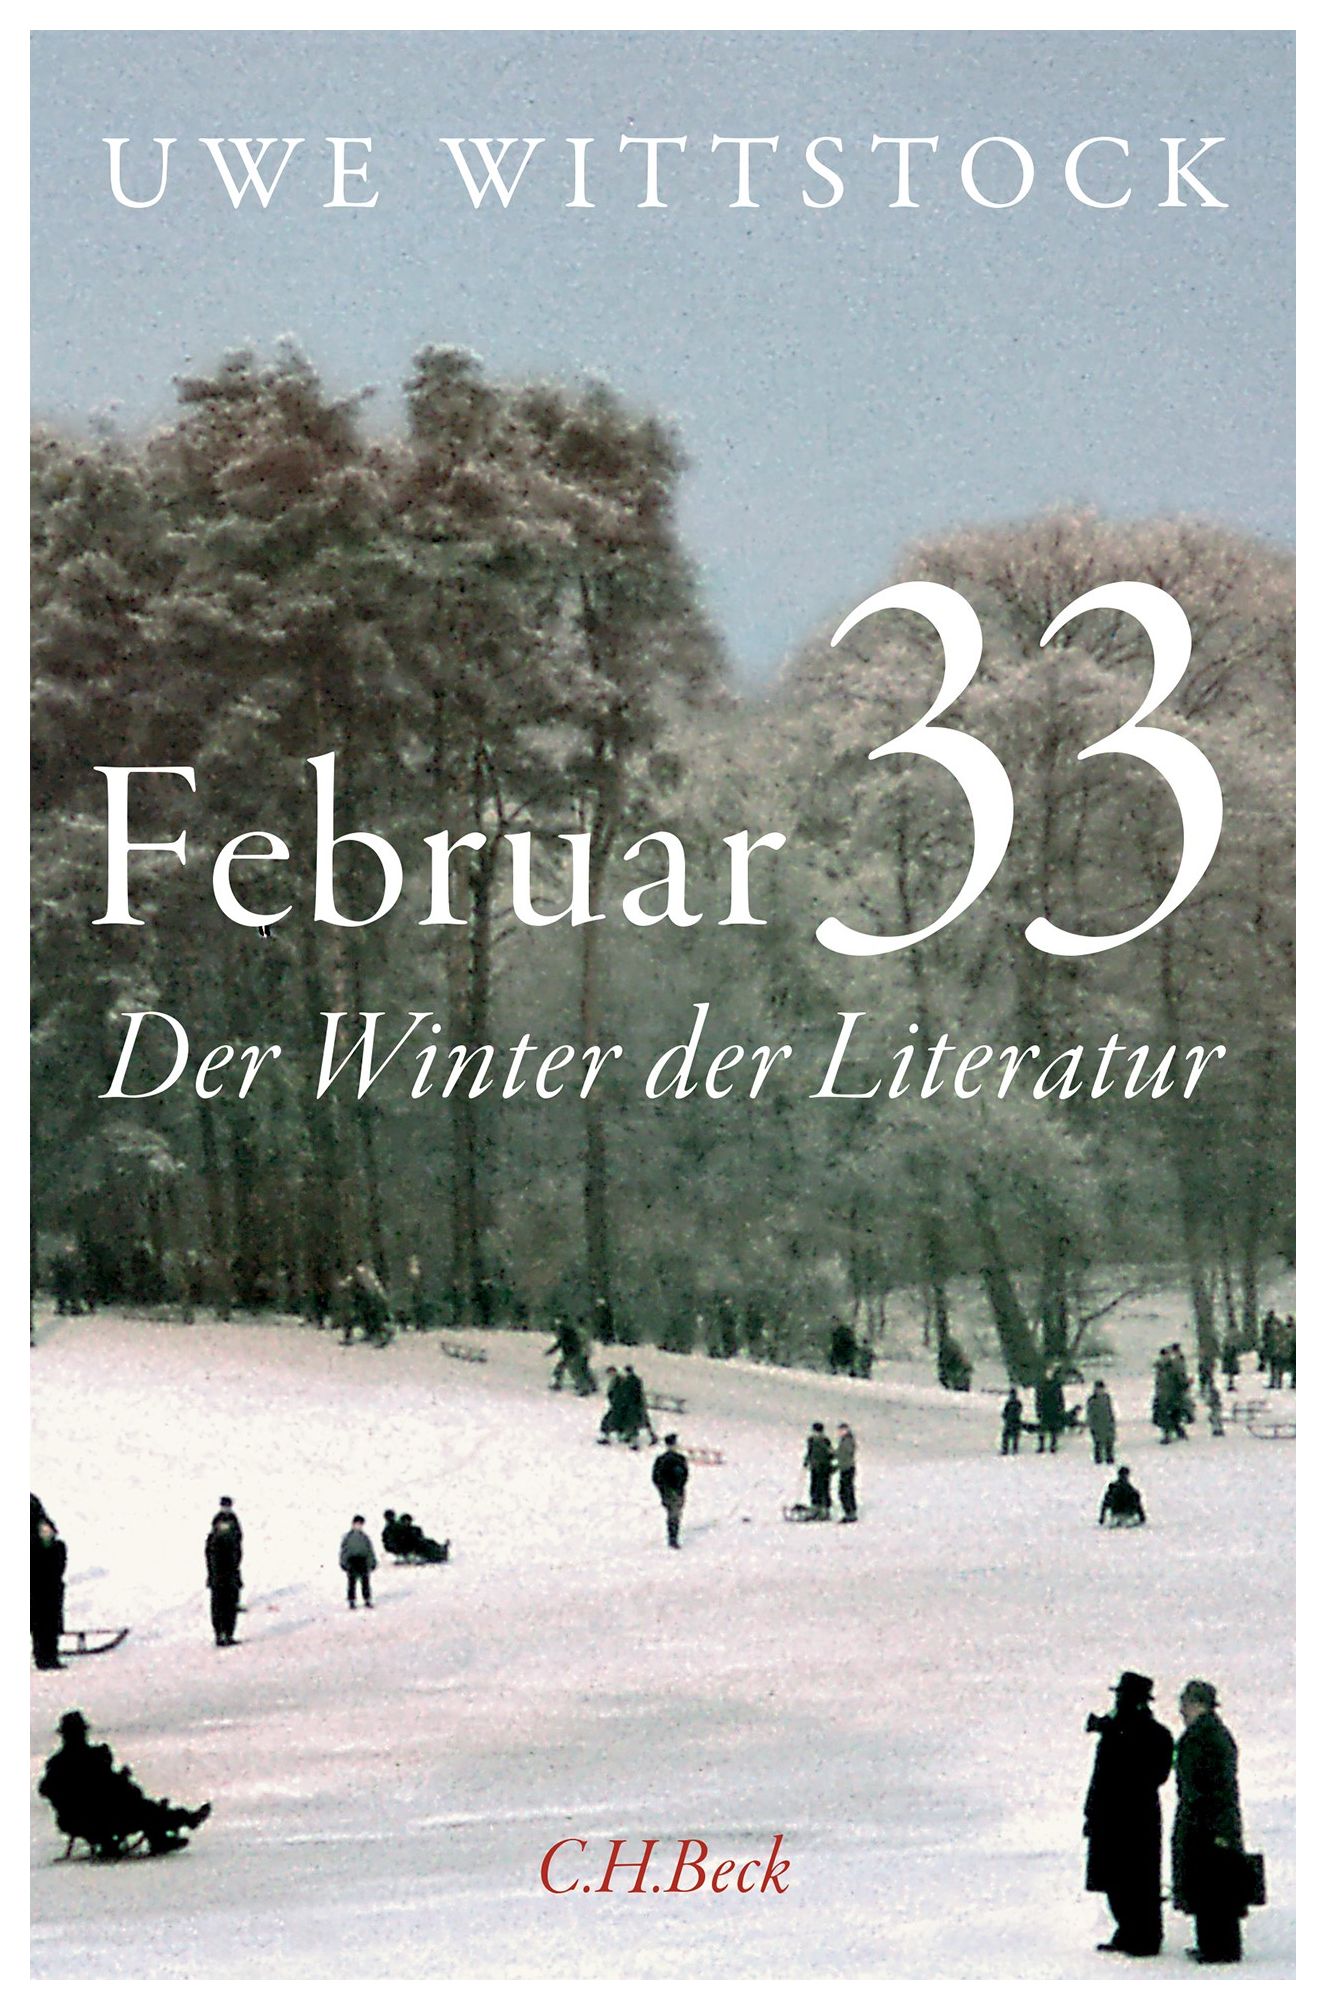 Uwe Wittstock. Februar 33. Der Winter der Literatur